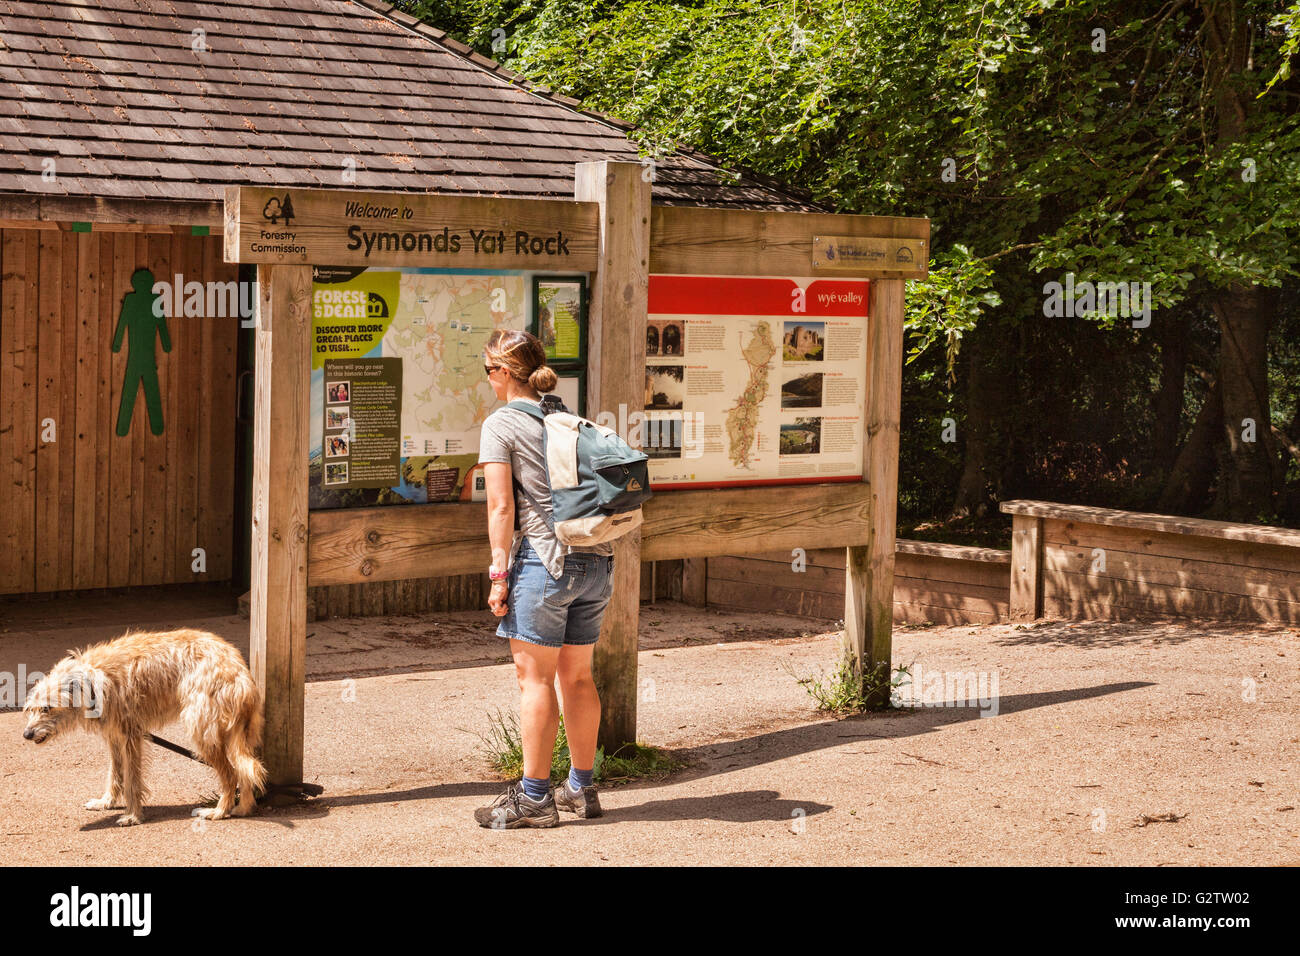 Femme en matériel de randonnée à la carte à votre guise sur à Symonds Yat Rock, Gloucestershire, England, UK Banque D'Images